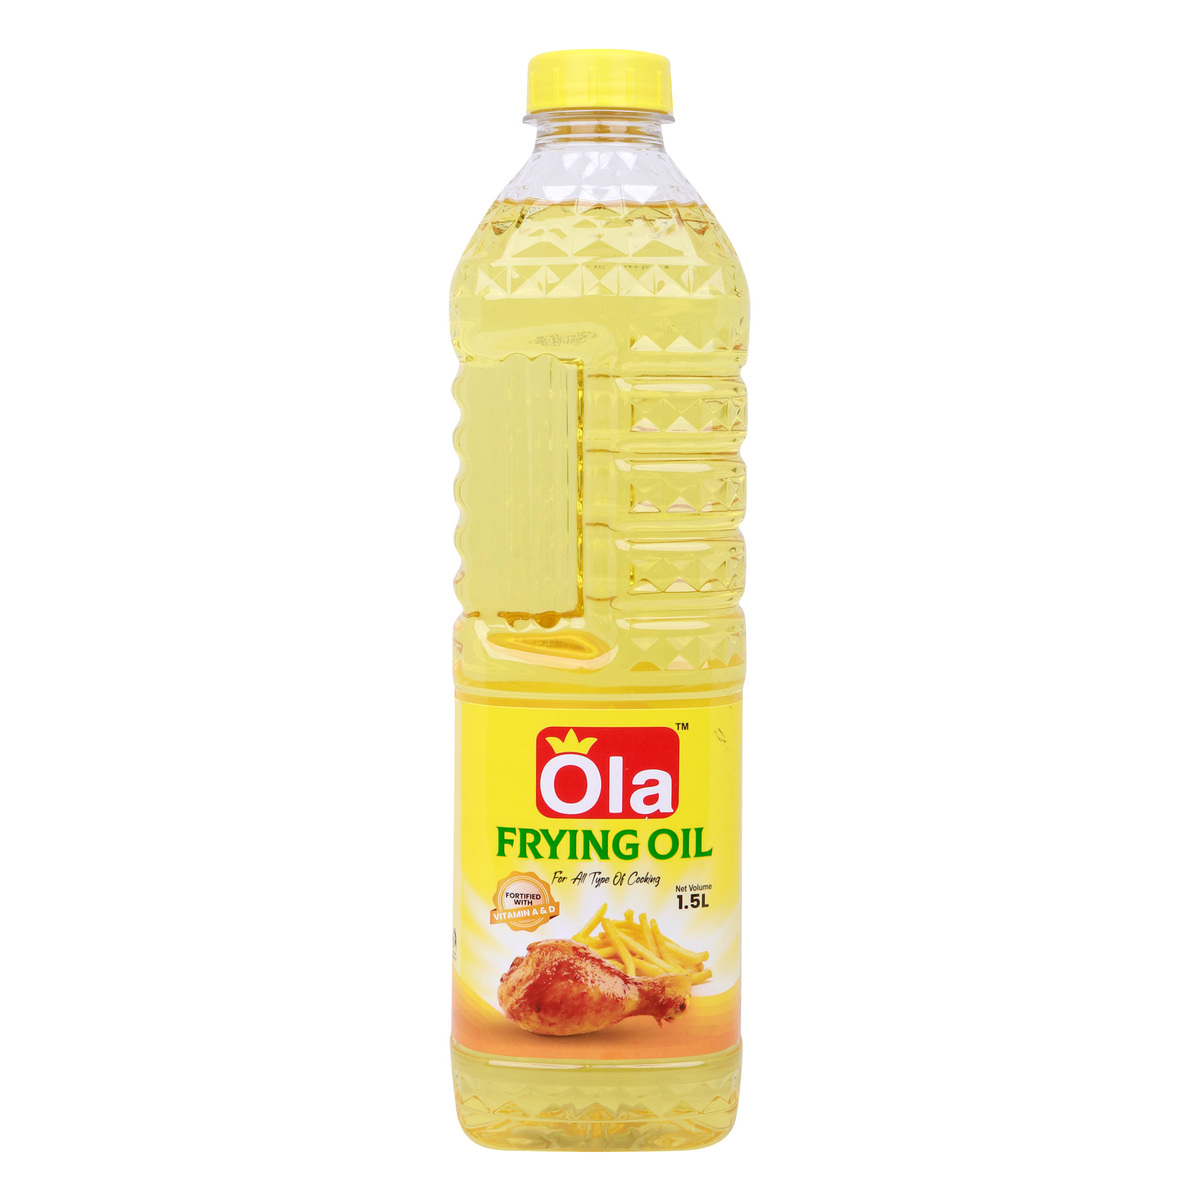 Ola Frying Oil, 1.5 Litre